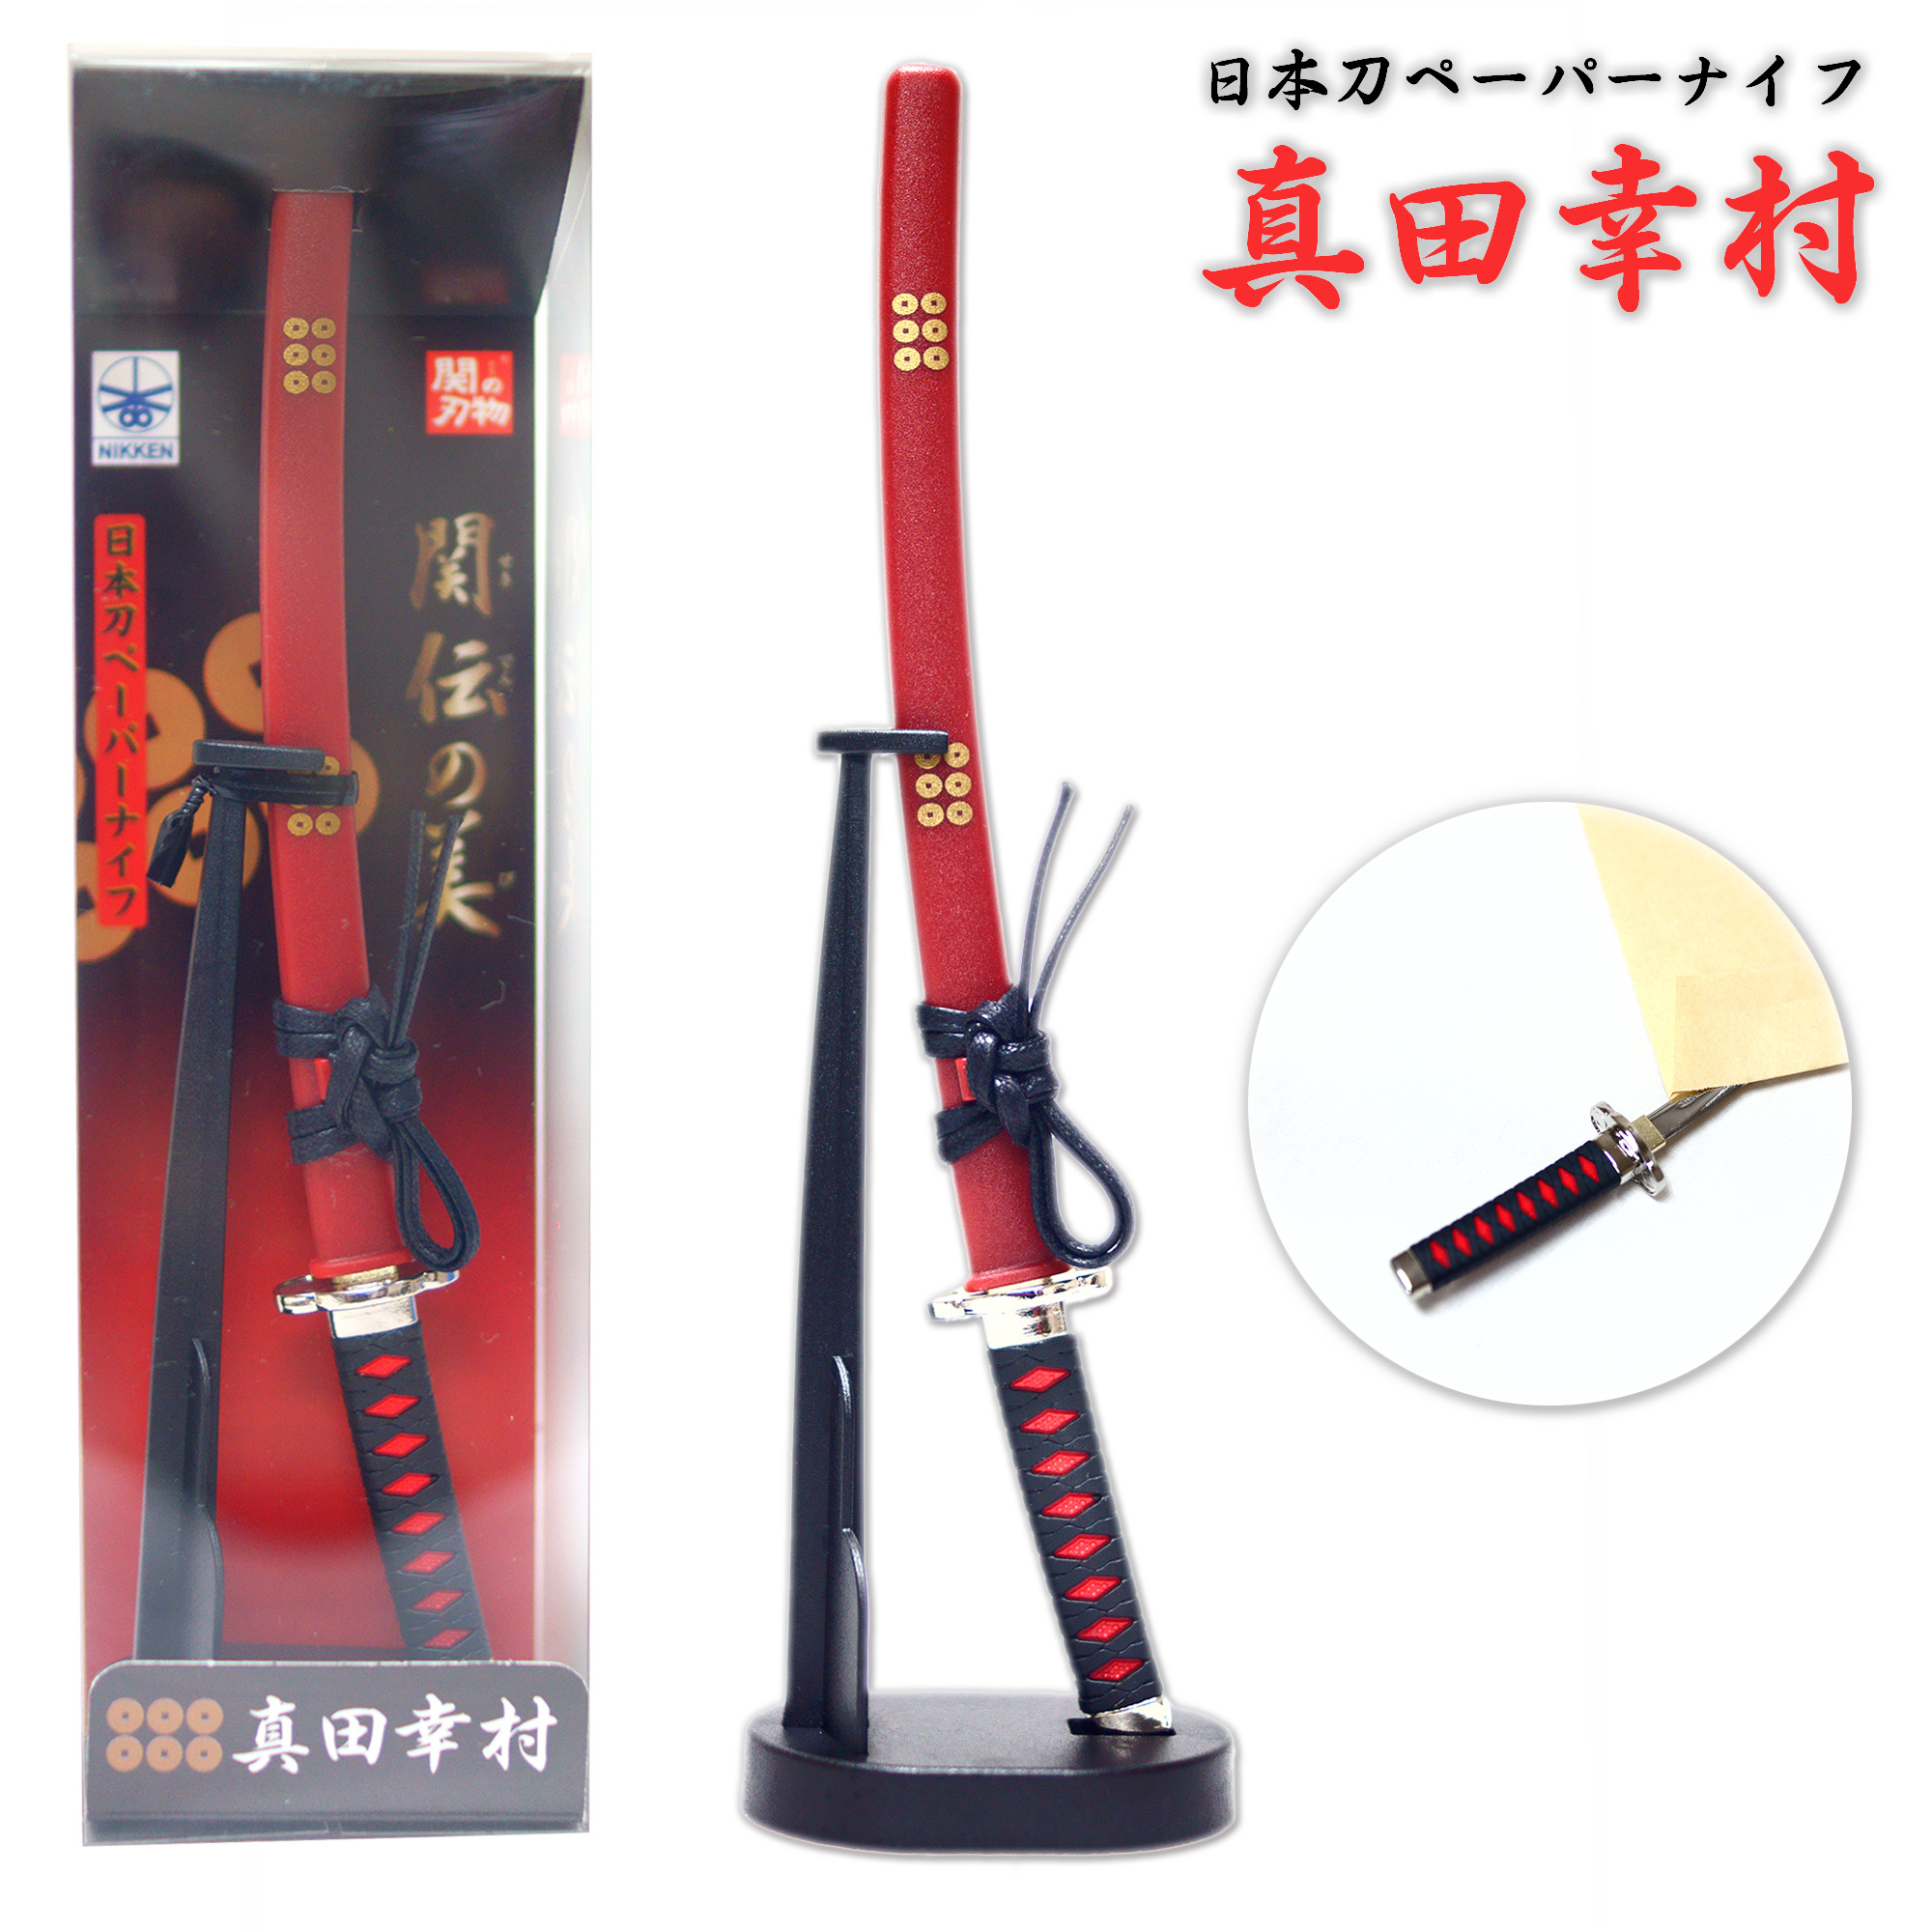 日本製 日本刀ペーパーナイフ 真田幸村モデル - ニッケン刃物 刀剣 関の刃物 関伝の美